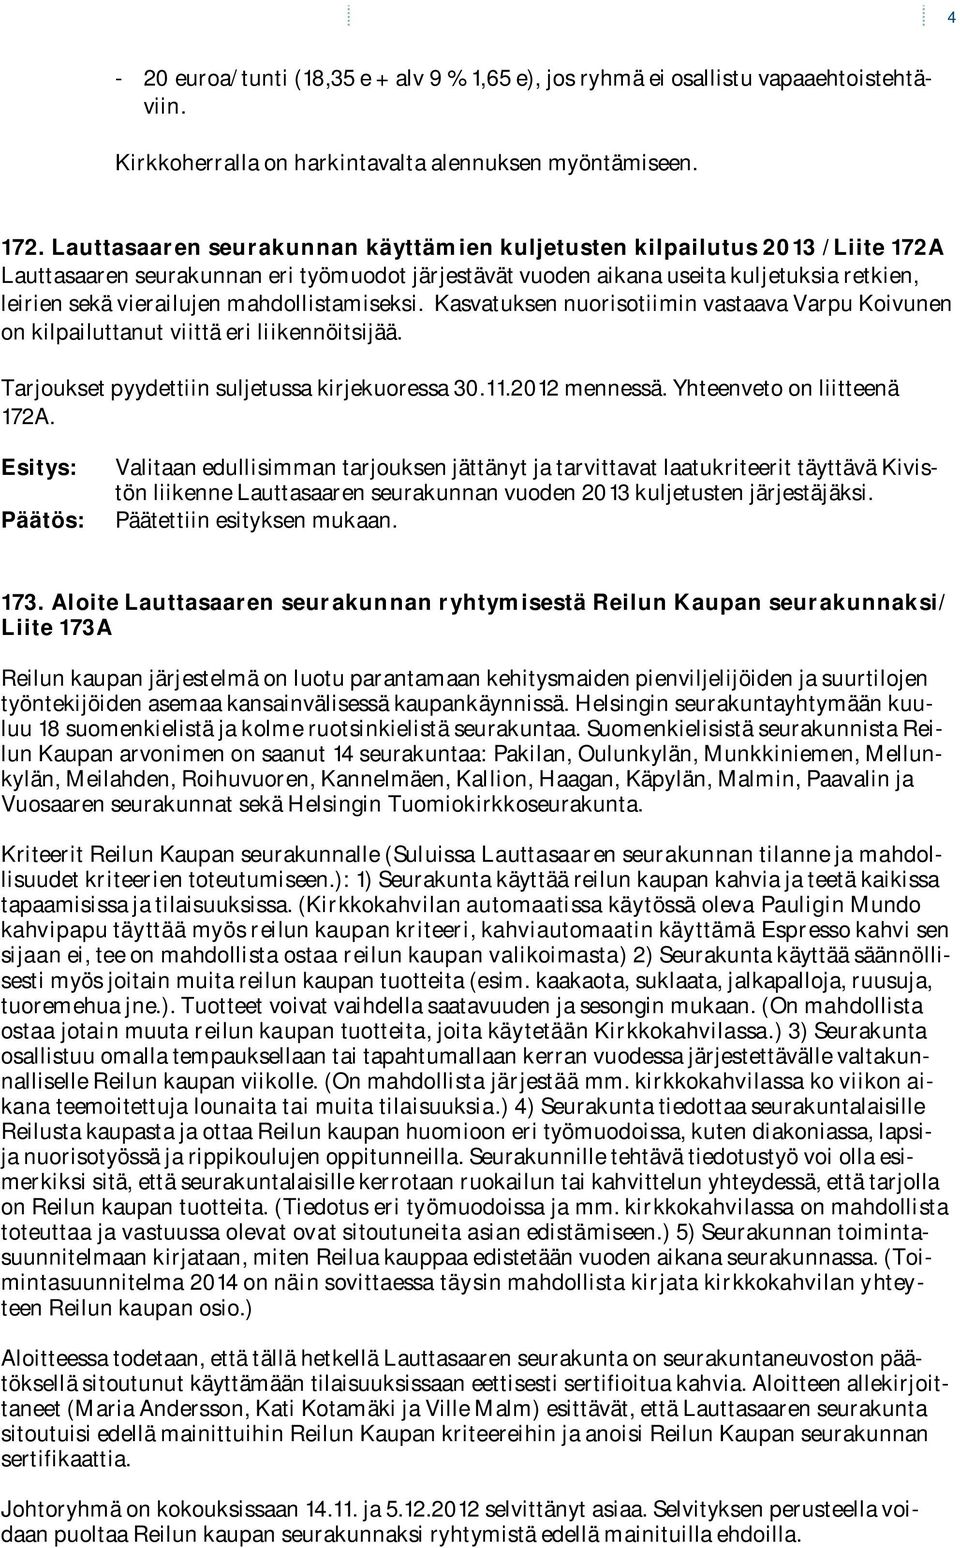 mahdollistamiseksi. Kasvatuksen nuorisotiimin vastaava Varpu Koivunen on kilpailuttanut viittä eri liikennöitsijää. Tarjoukset pyydettiin suljetussa kirjekuoressa 30.11.2012 mennessä.